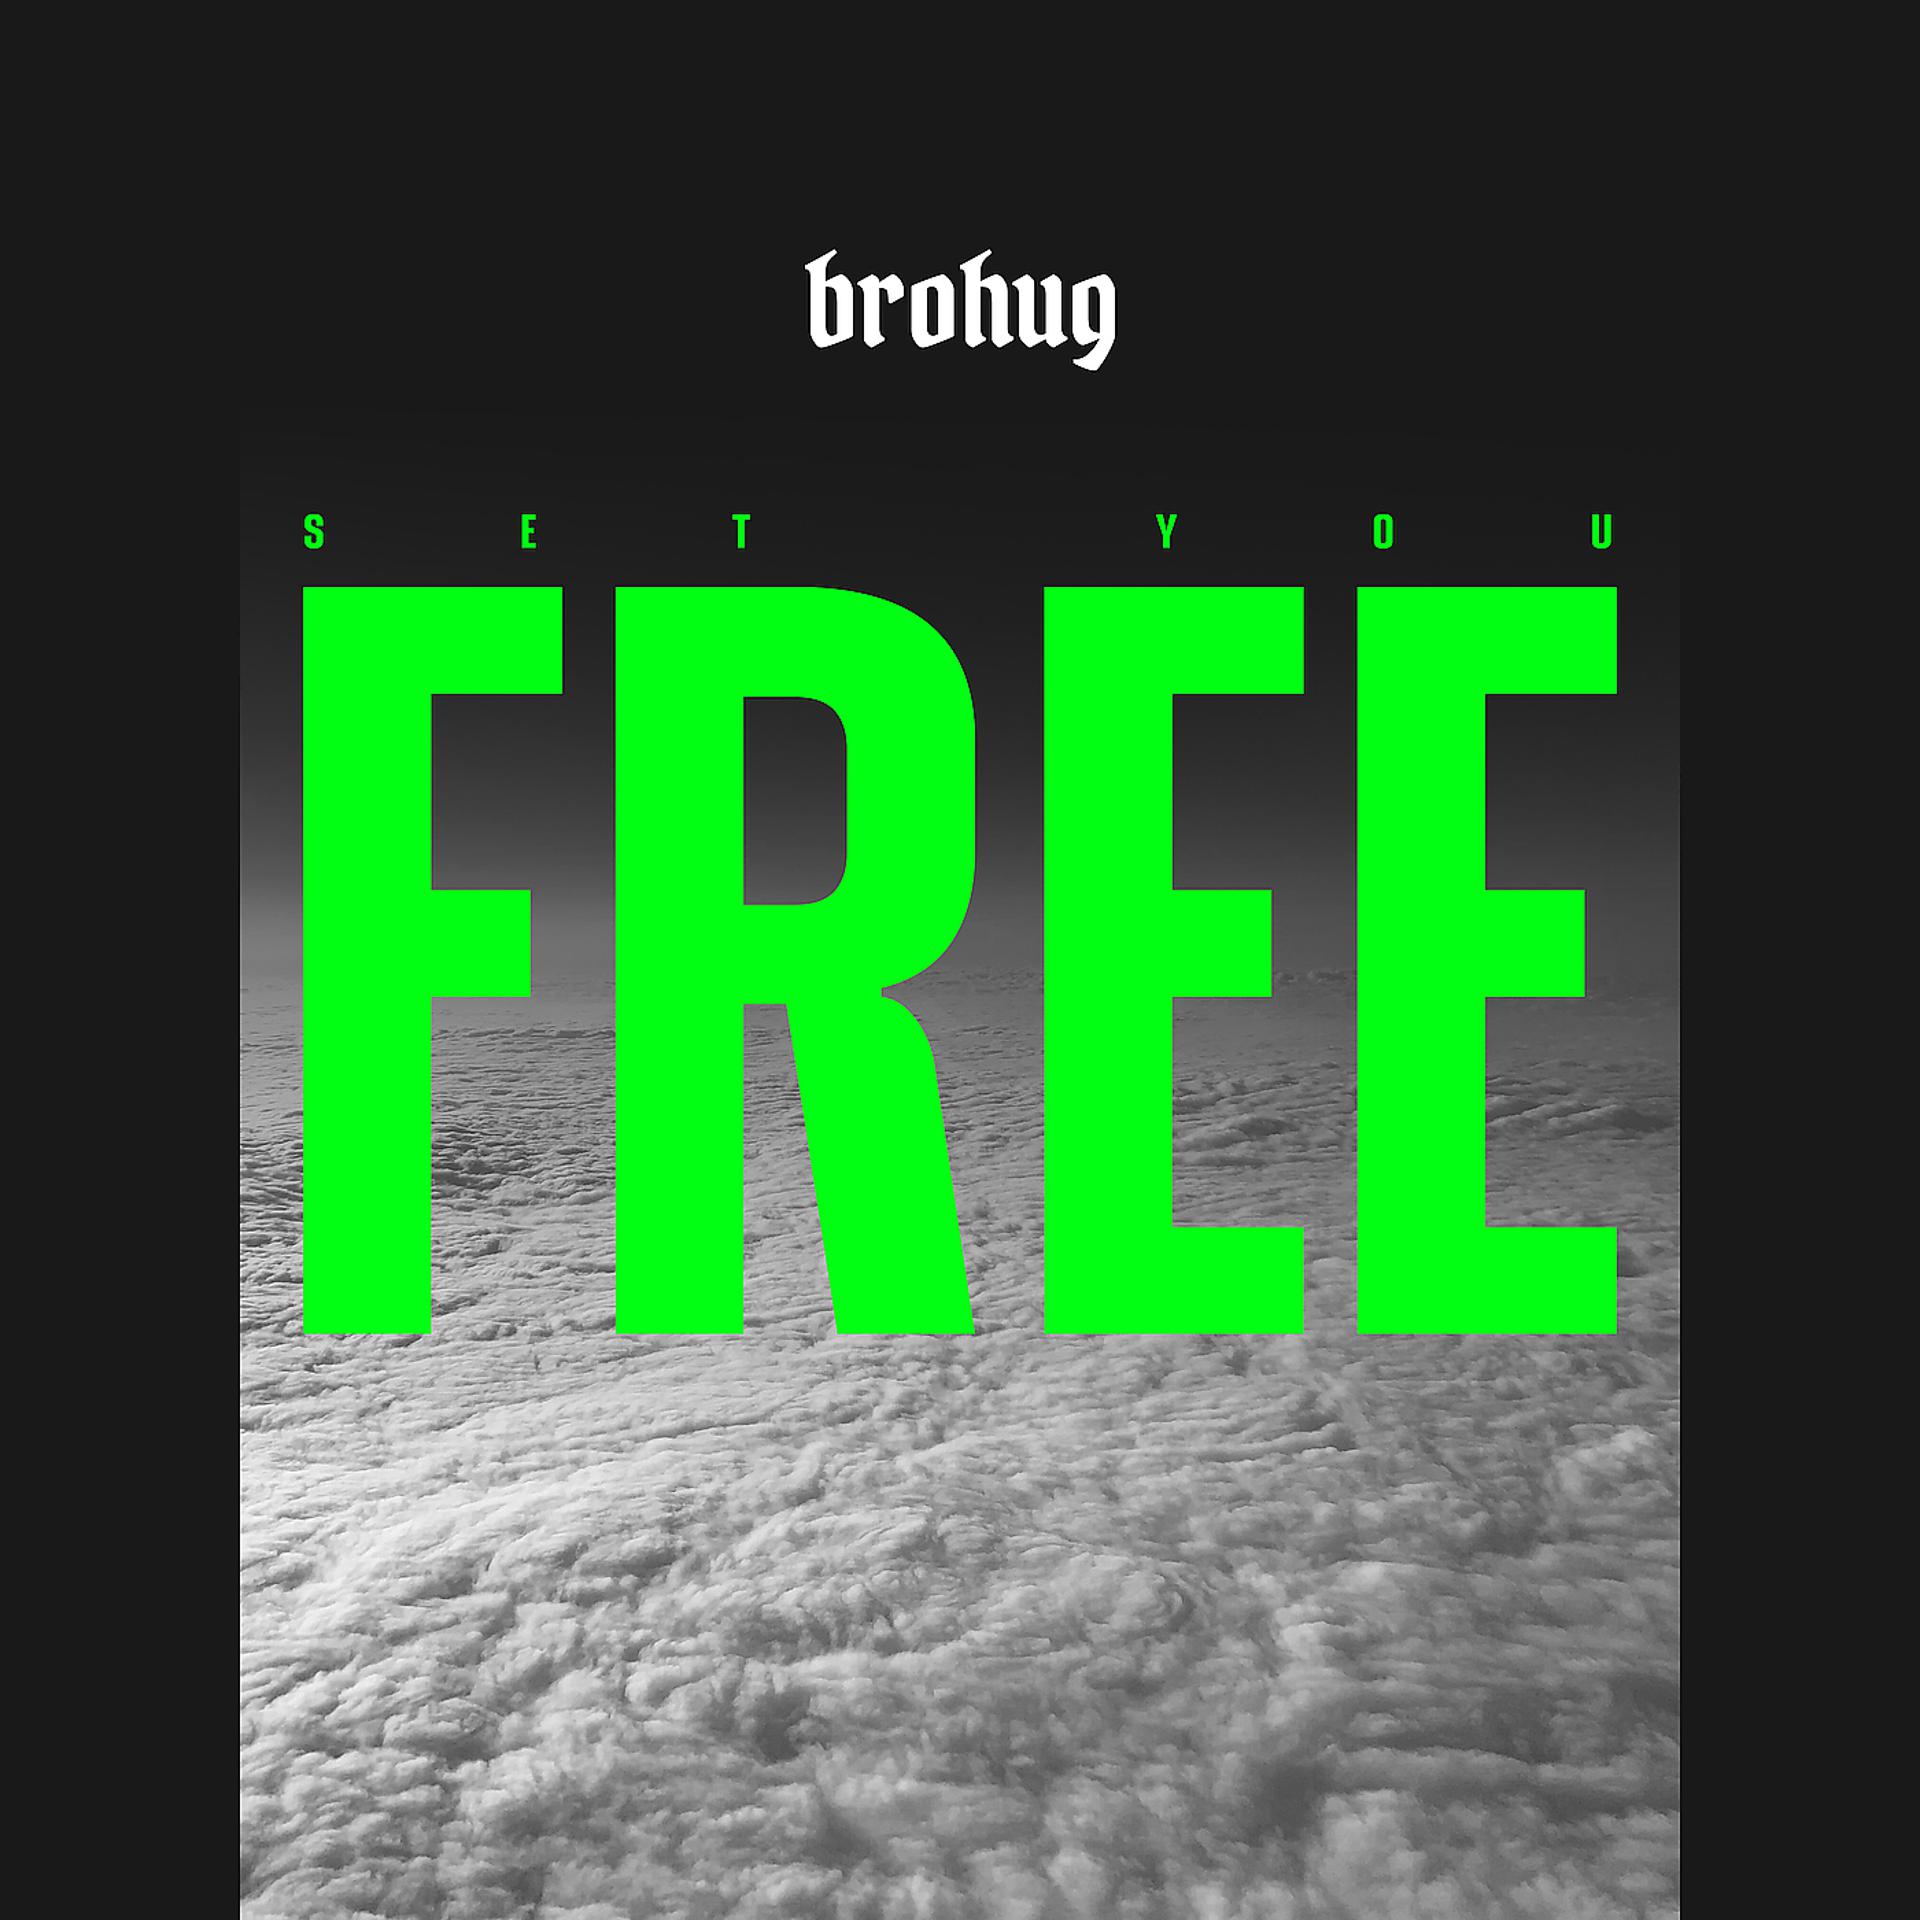 Постер альбома Set You Free